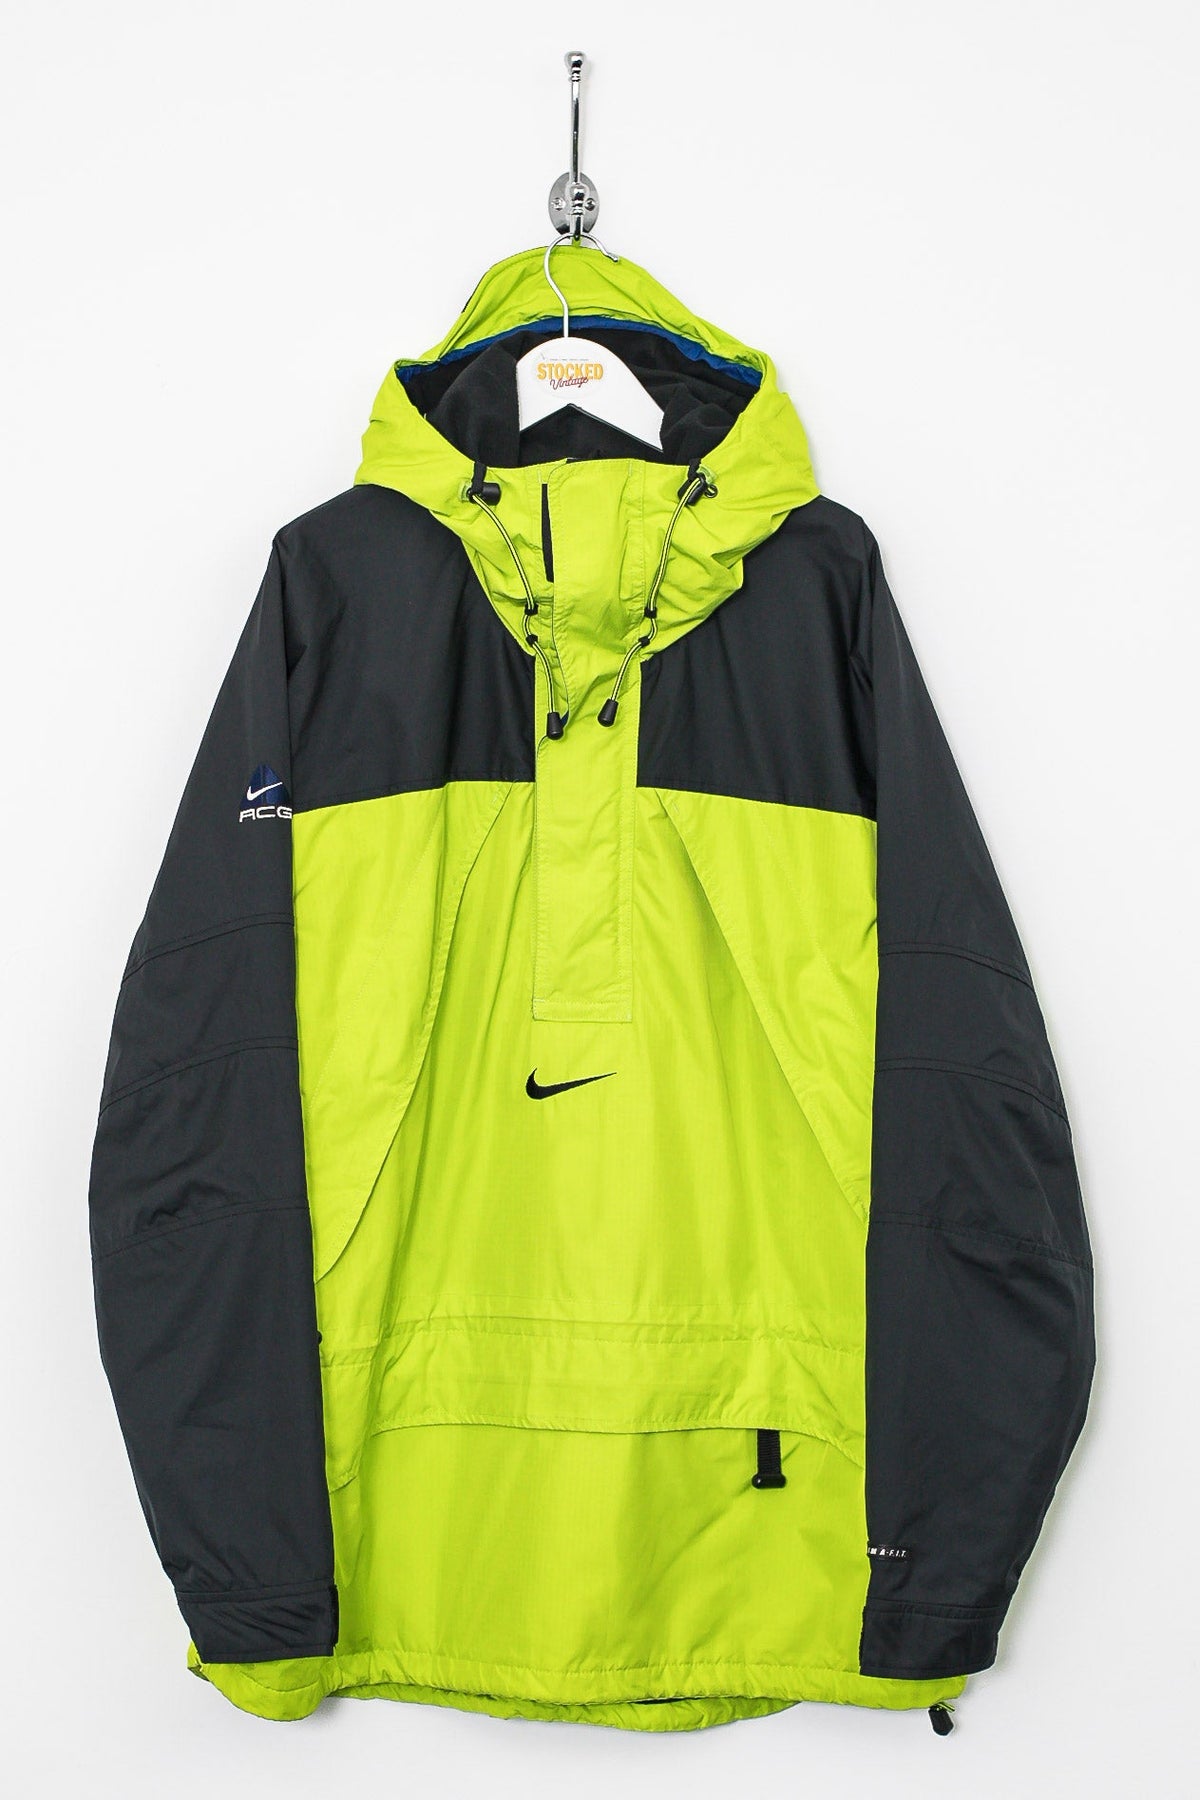 00s Nike ACG 1/4 Zip Fleece Lined Jacket (XL)